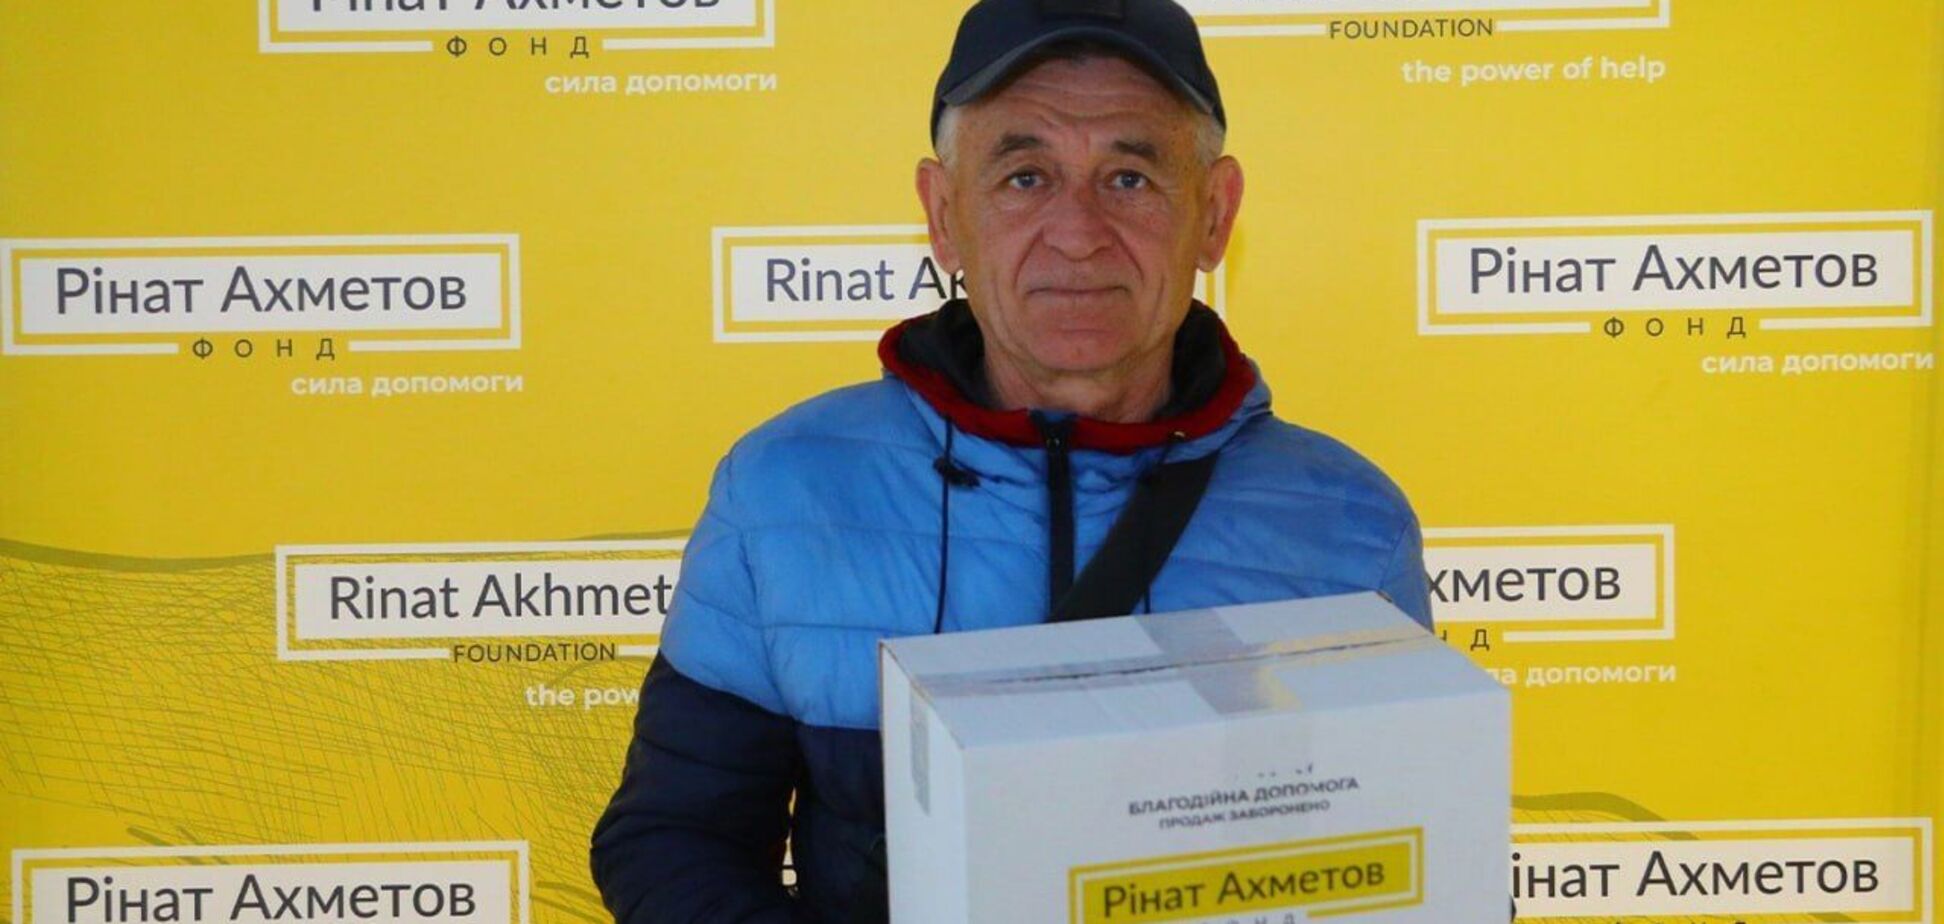 'Зеленый центр' в Запорожье с начала года издал более 2 тысяч проднаборов от Фонда Рината Ахметова